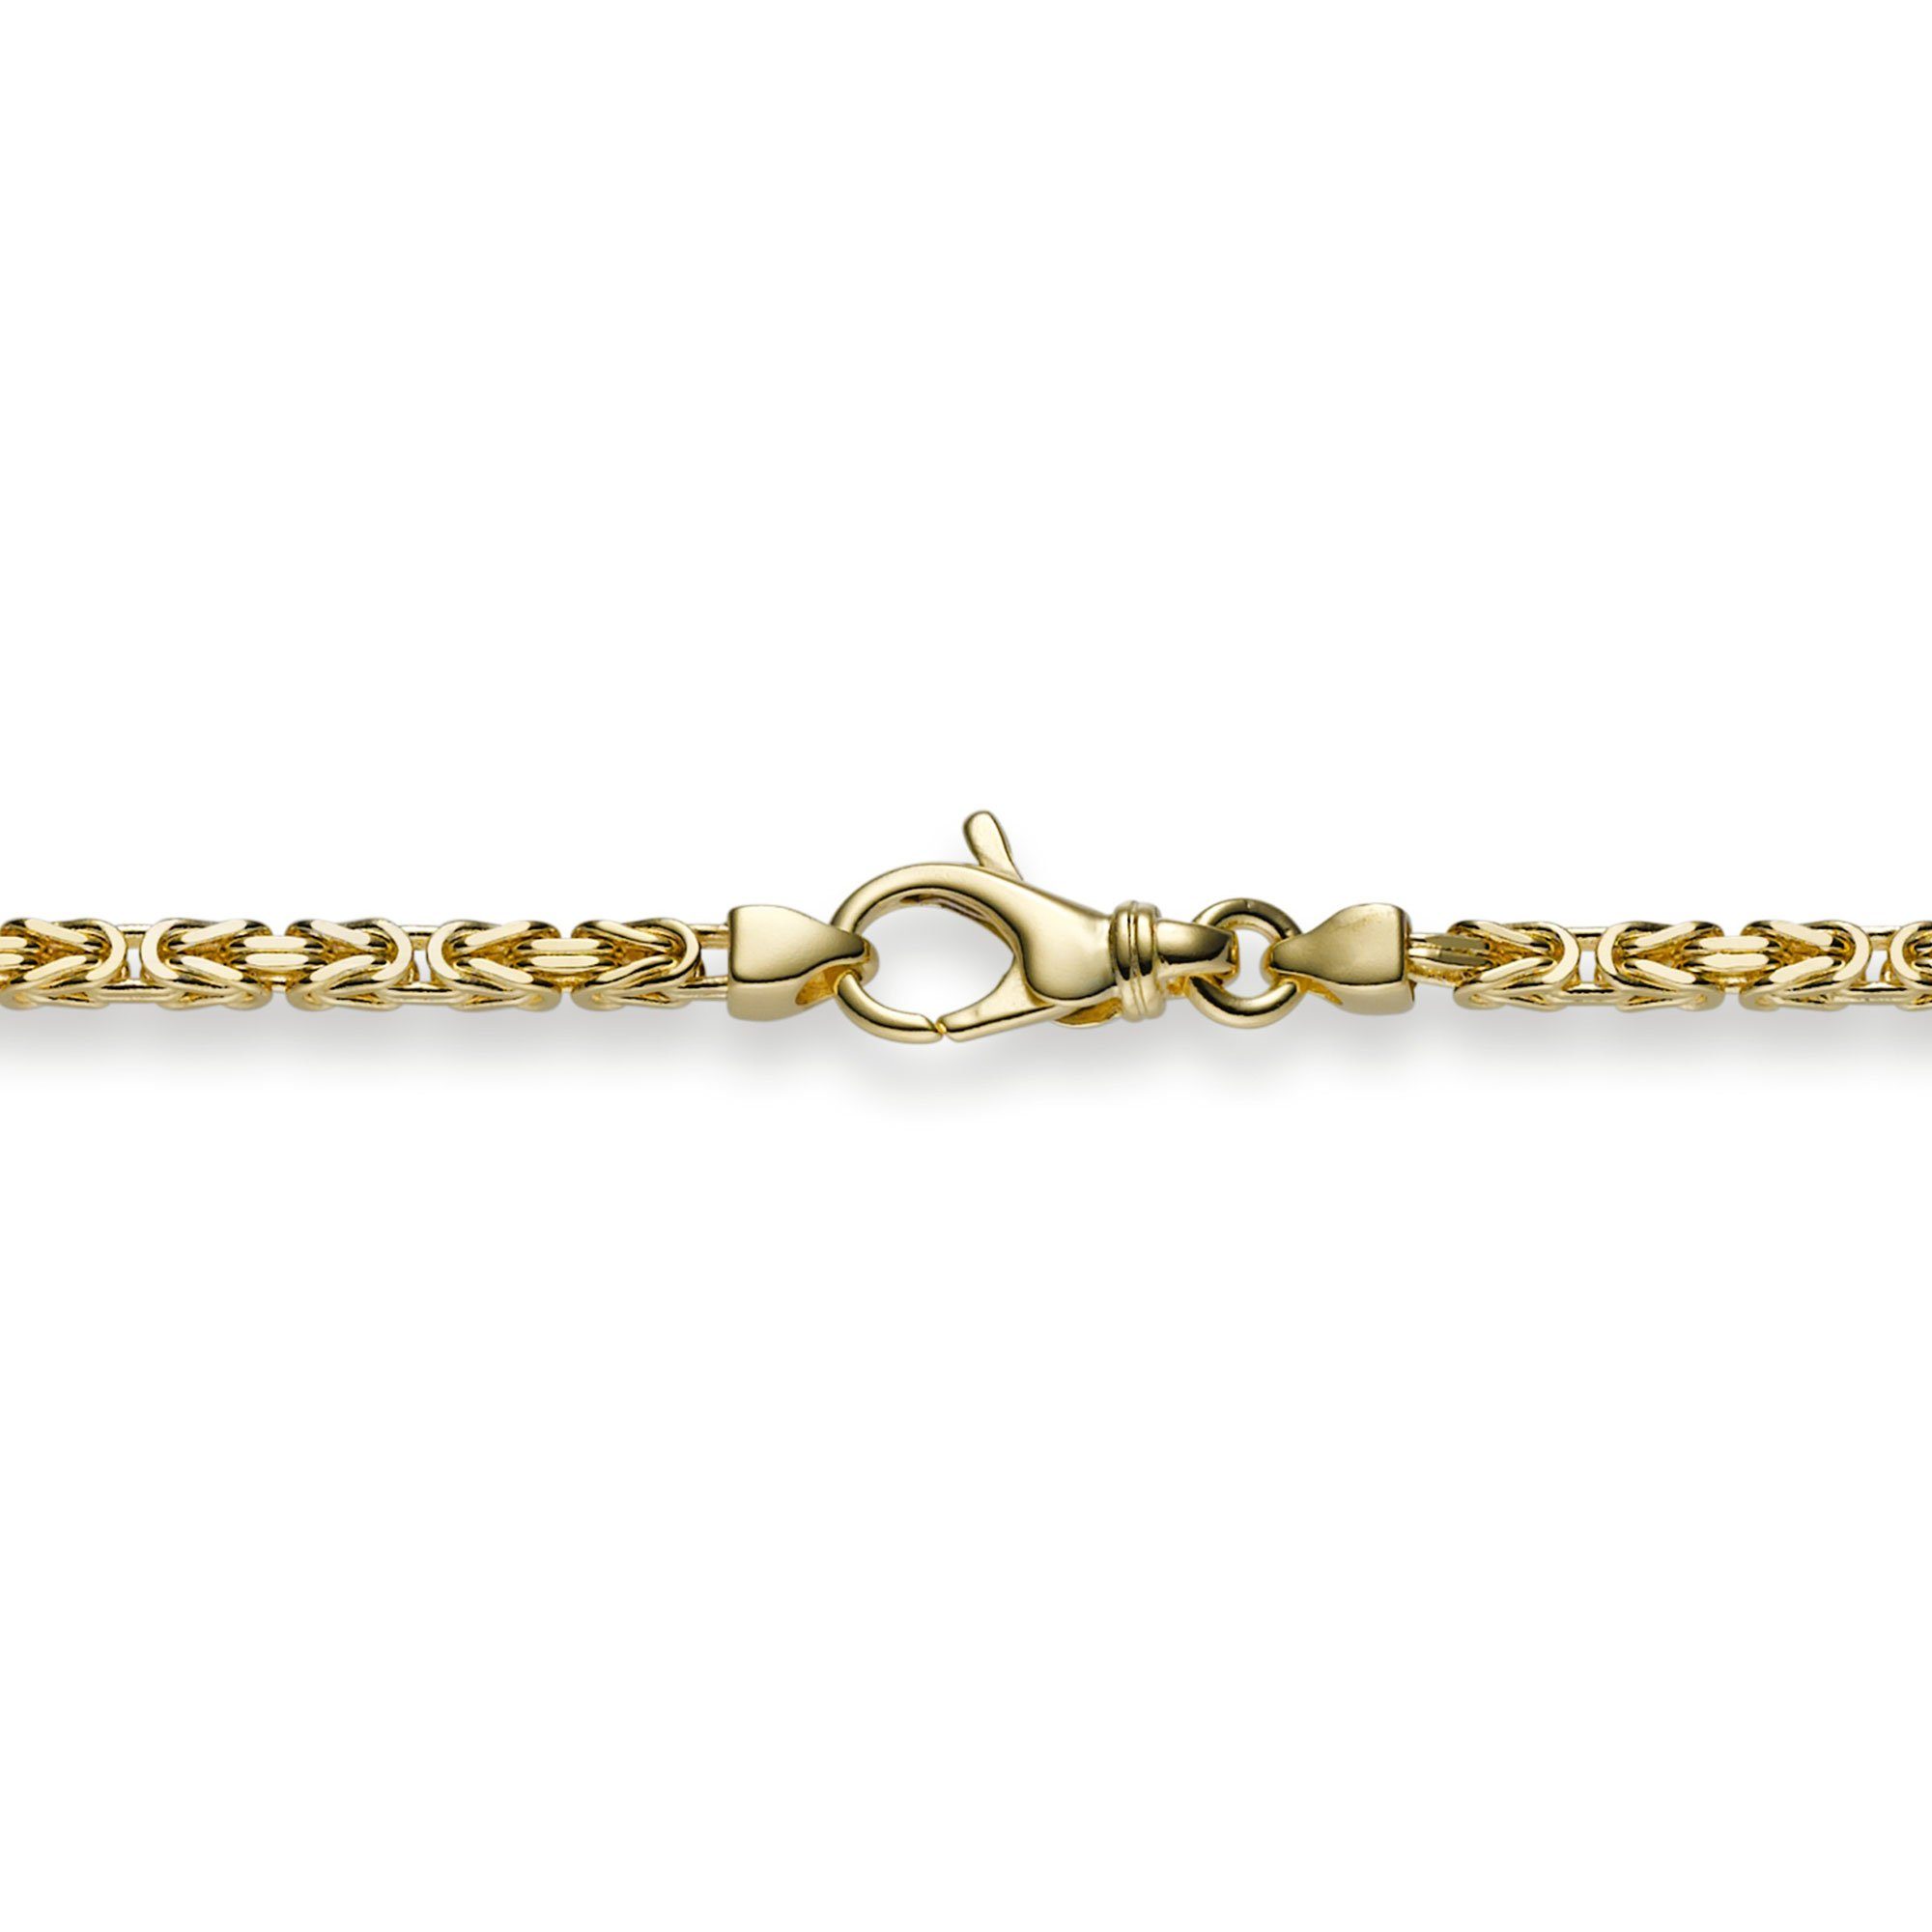 HOPLO Goldarmband Goldkette Königskette Länge 19cm - Breite 2,5mm - 585-14 Karat Gold